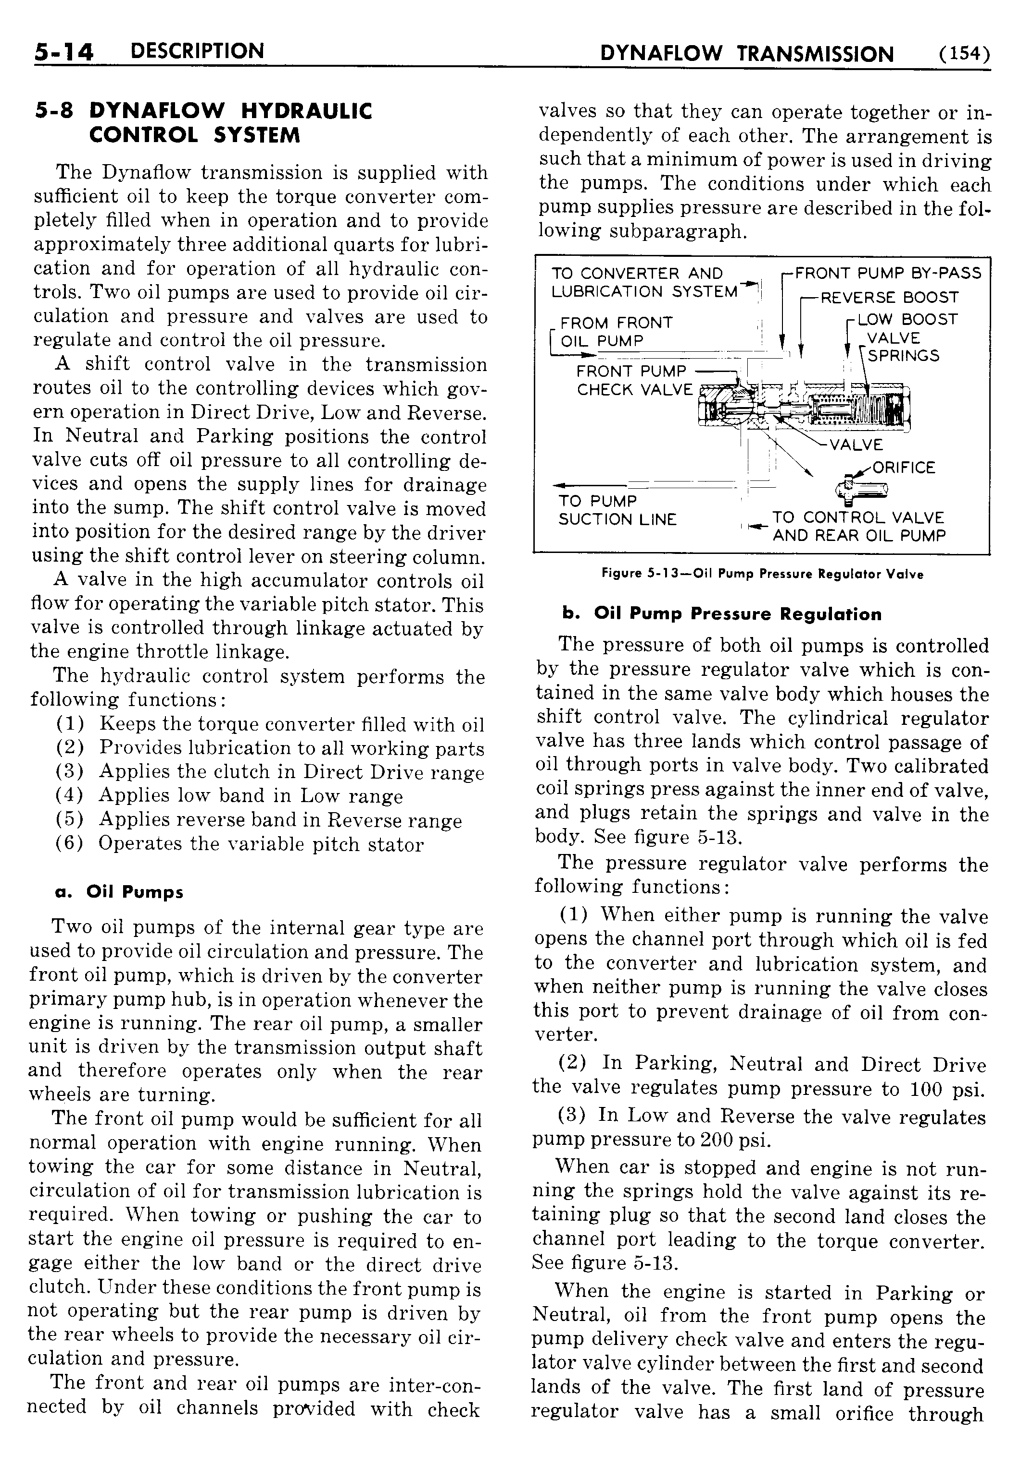 n_06 1955 Buick Shop Manual - Dynaflow-014-014.jpg